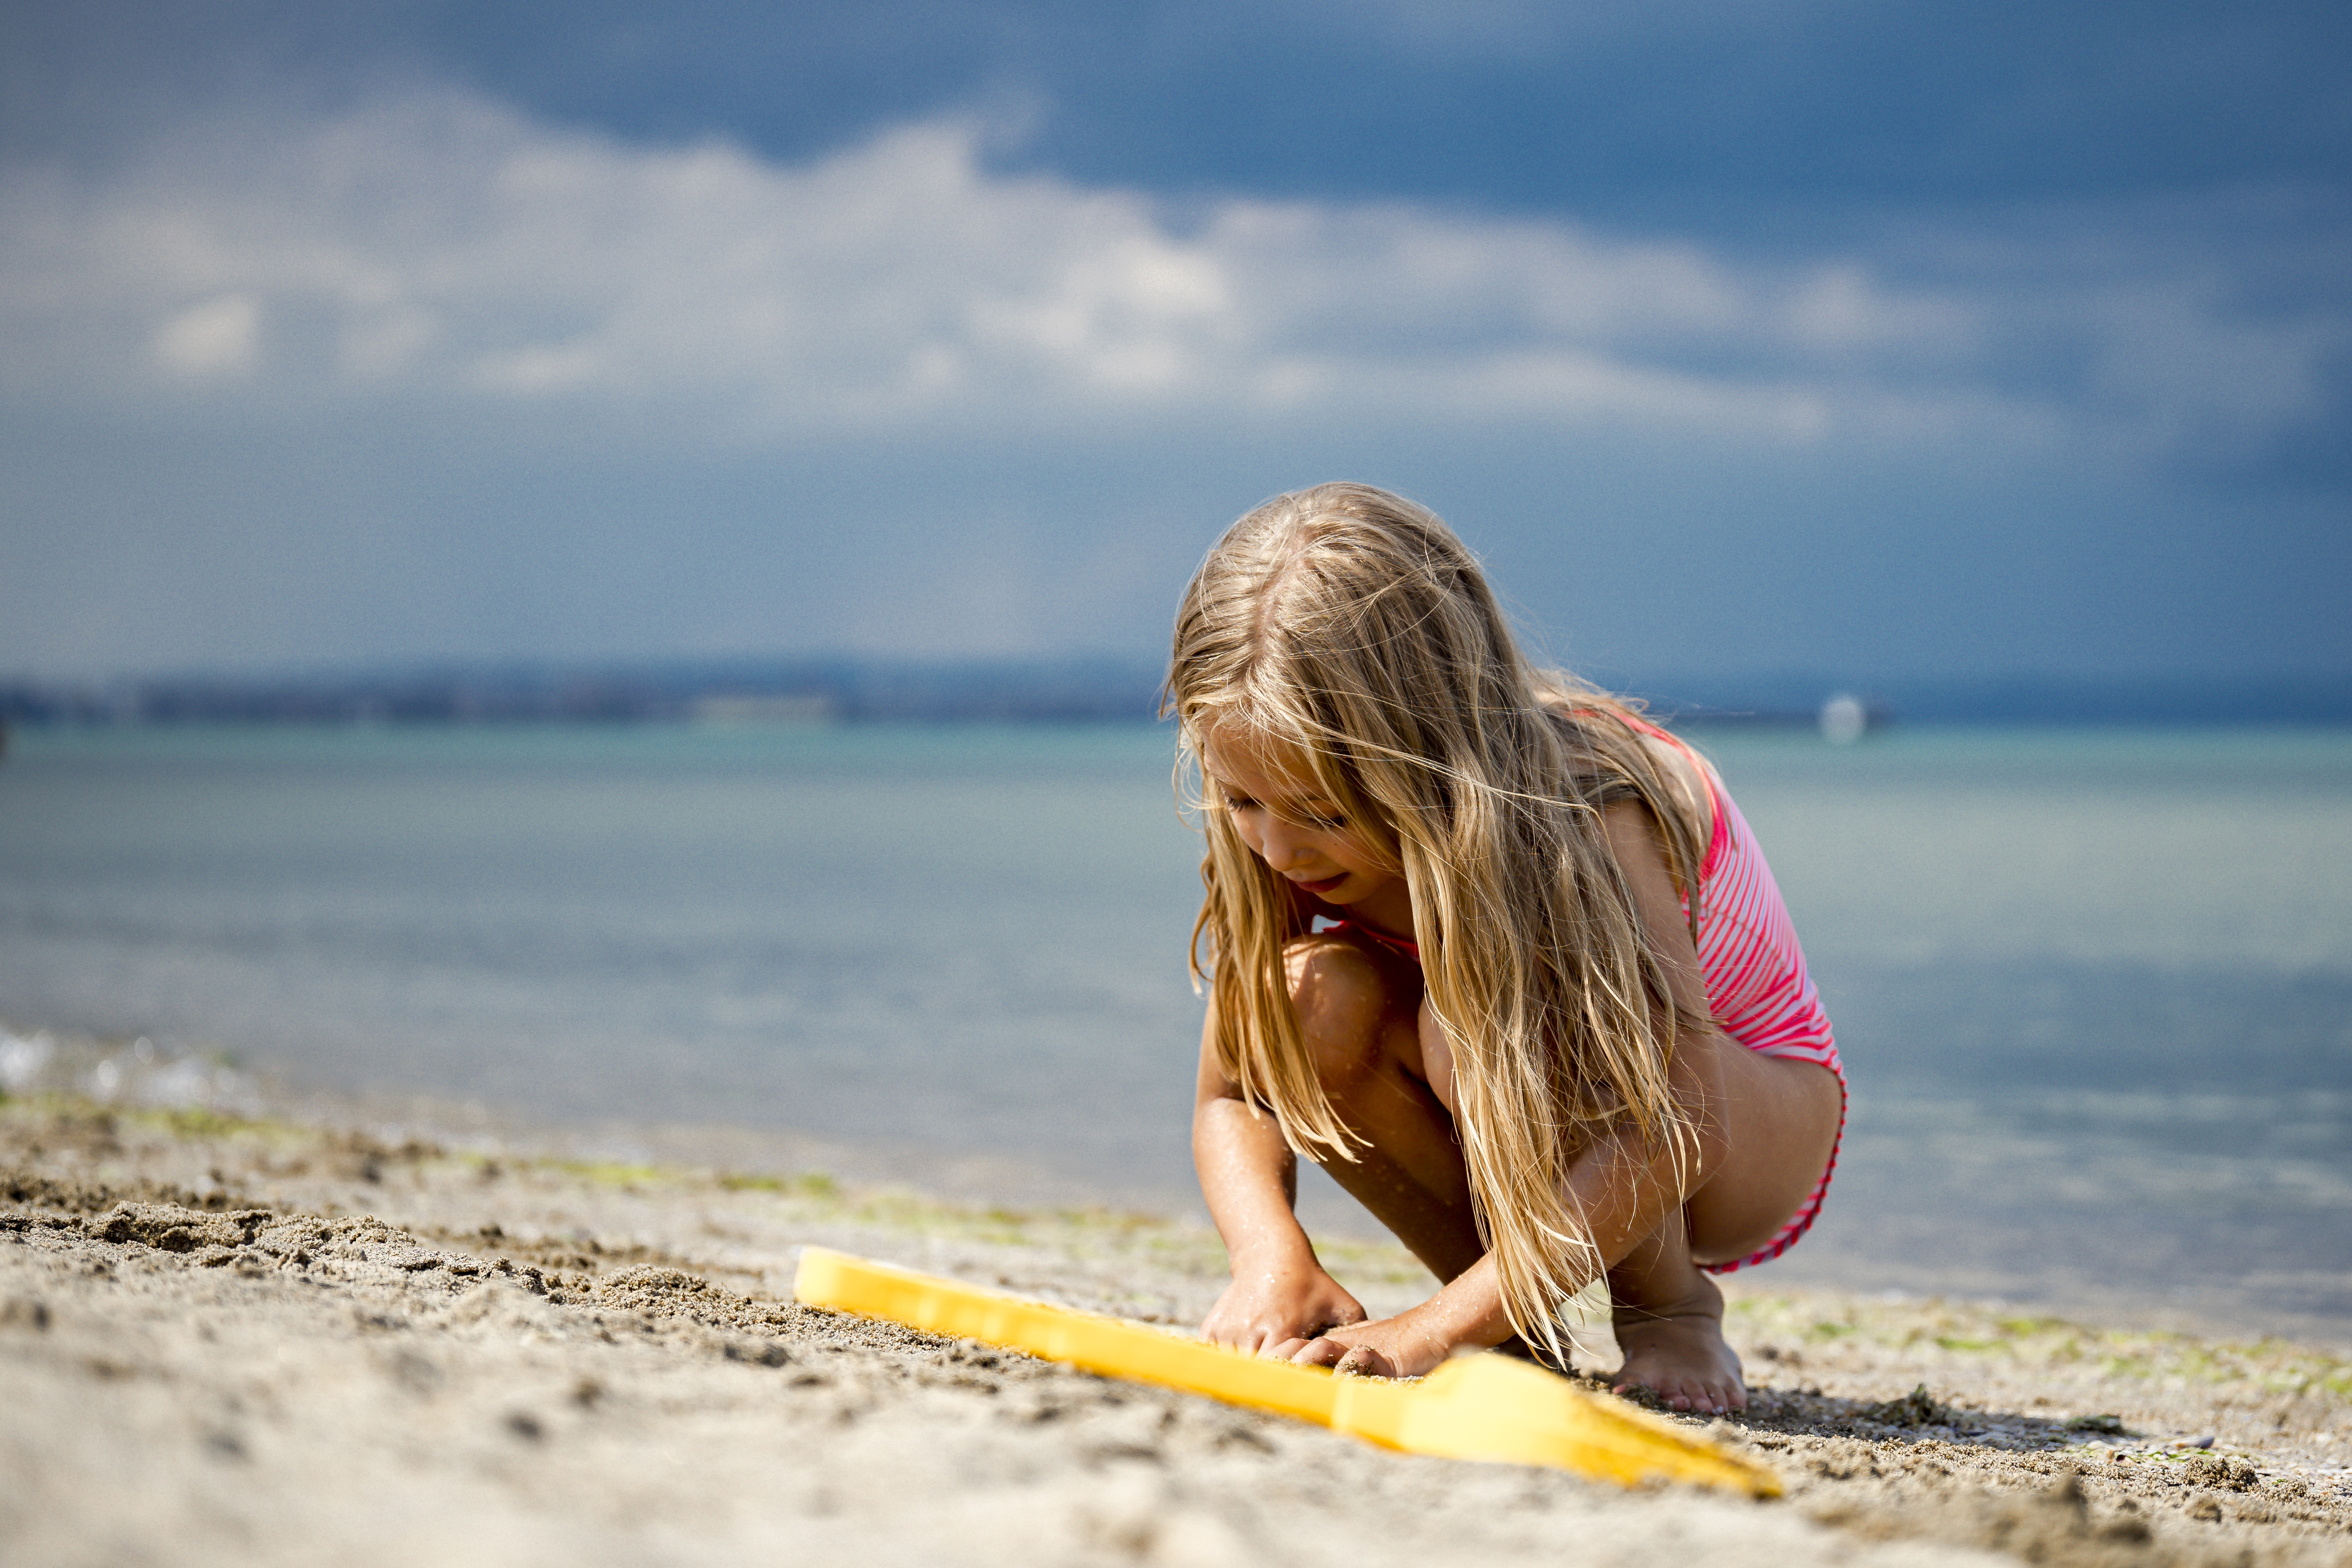 10 летние девочки на пляже